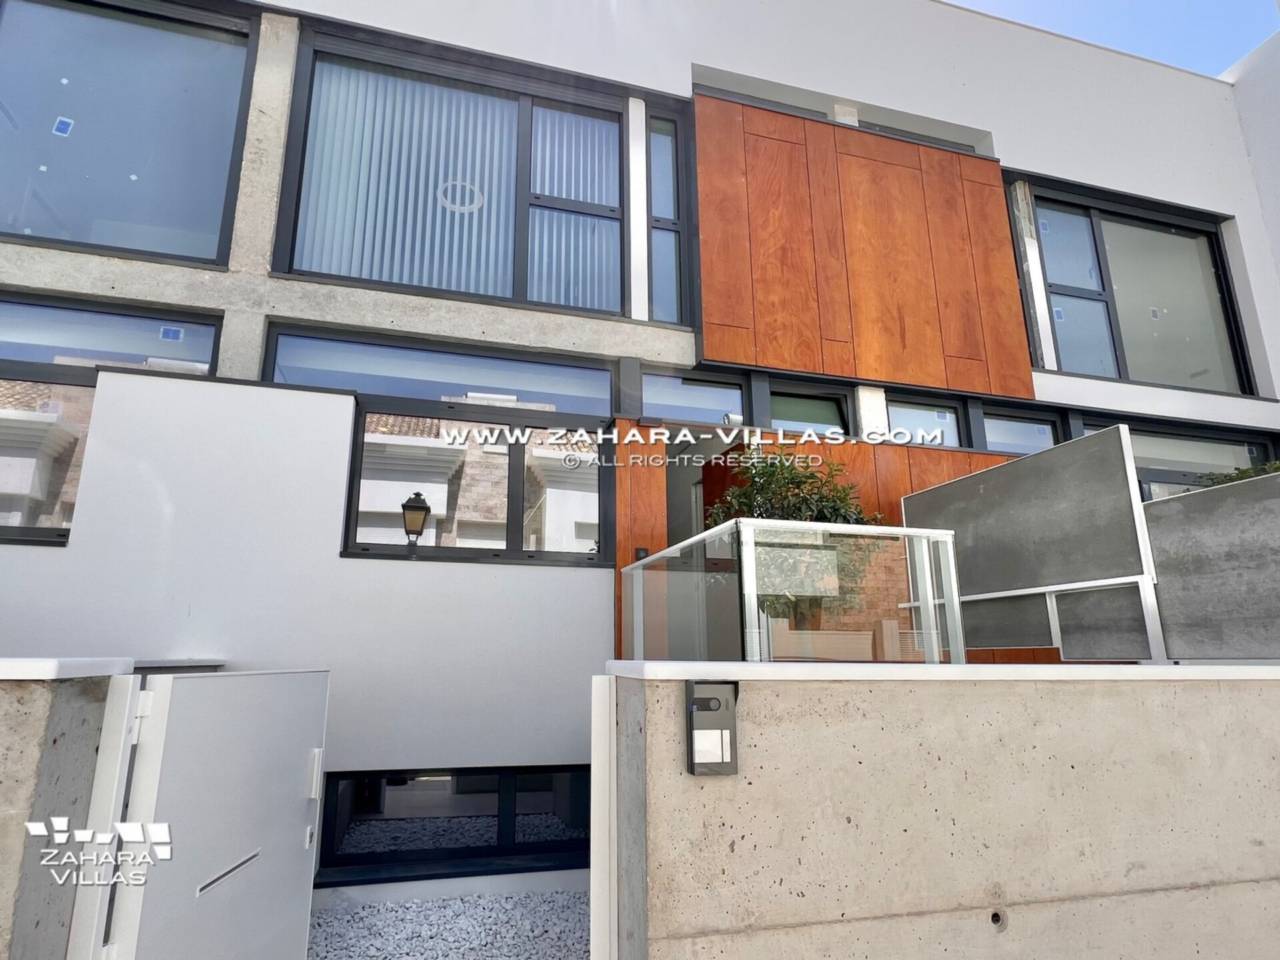 Imagen 37 de Promoción obra nueva terminada "EL OASIS DE ZAHARA" viviendas adosadas junto al mar